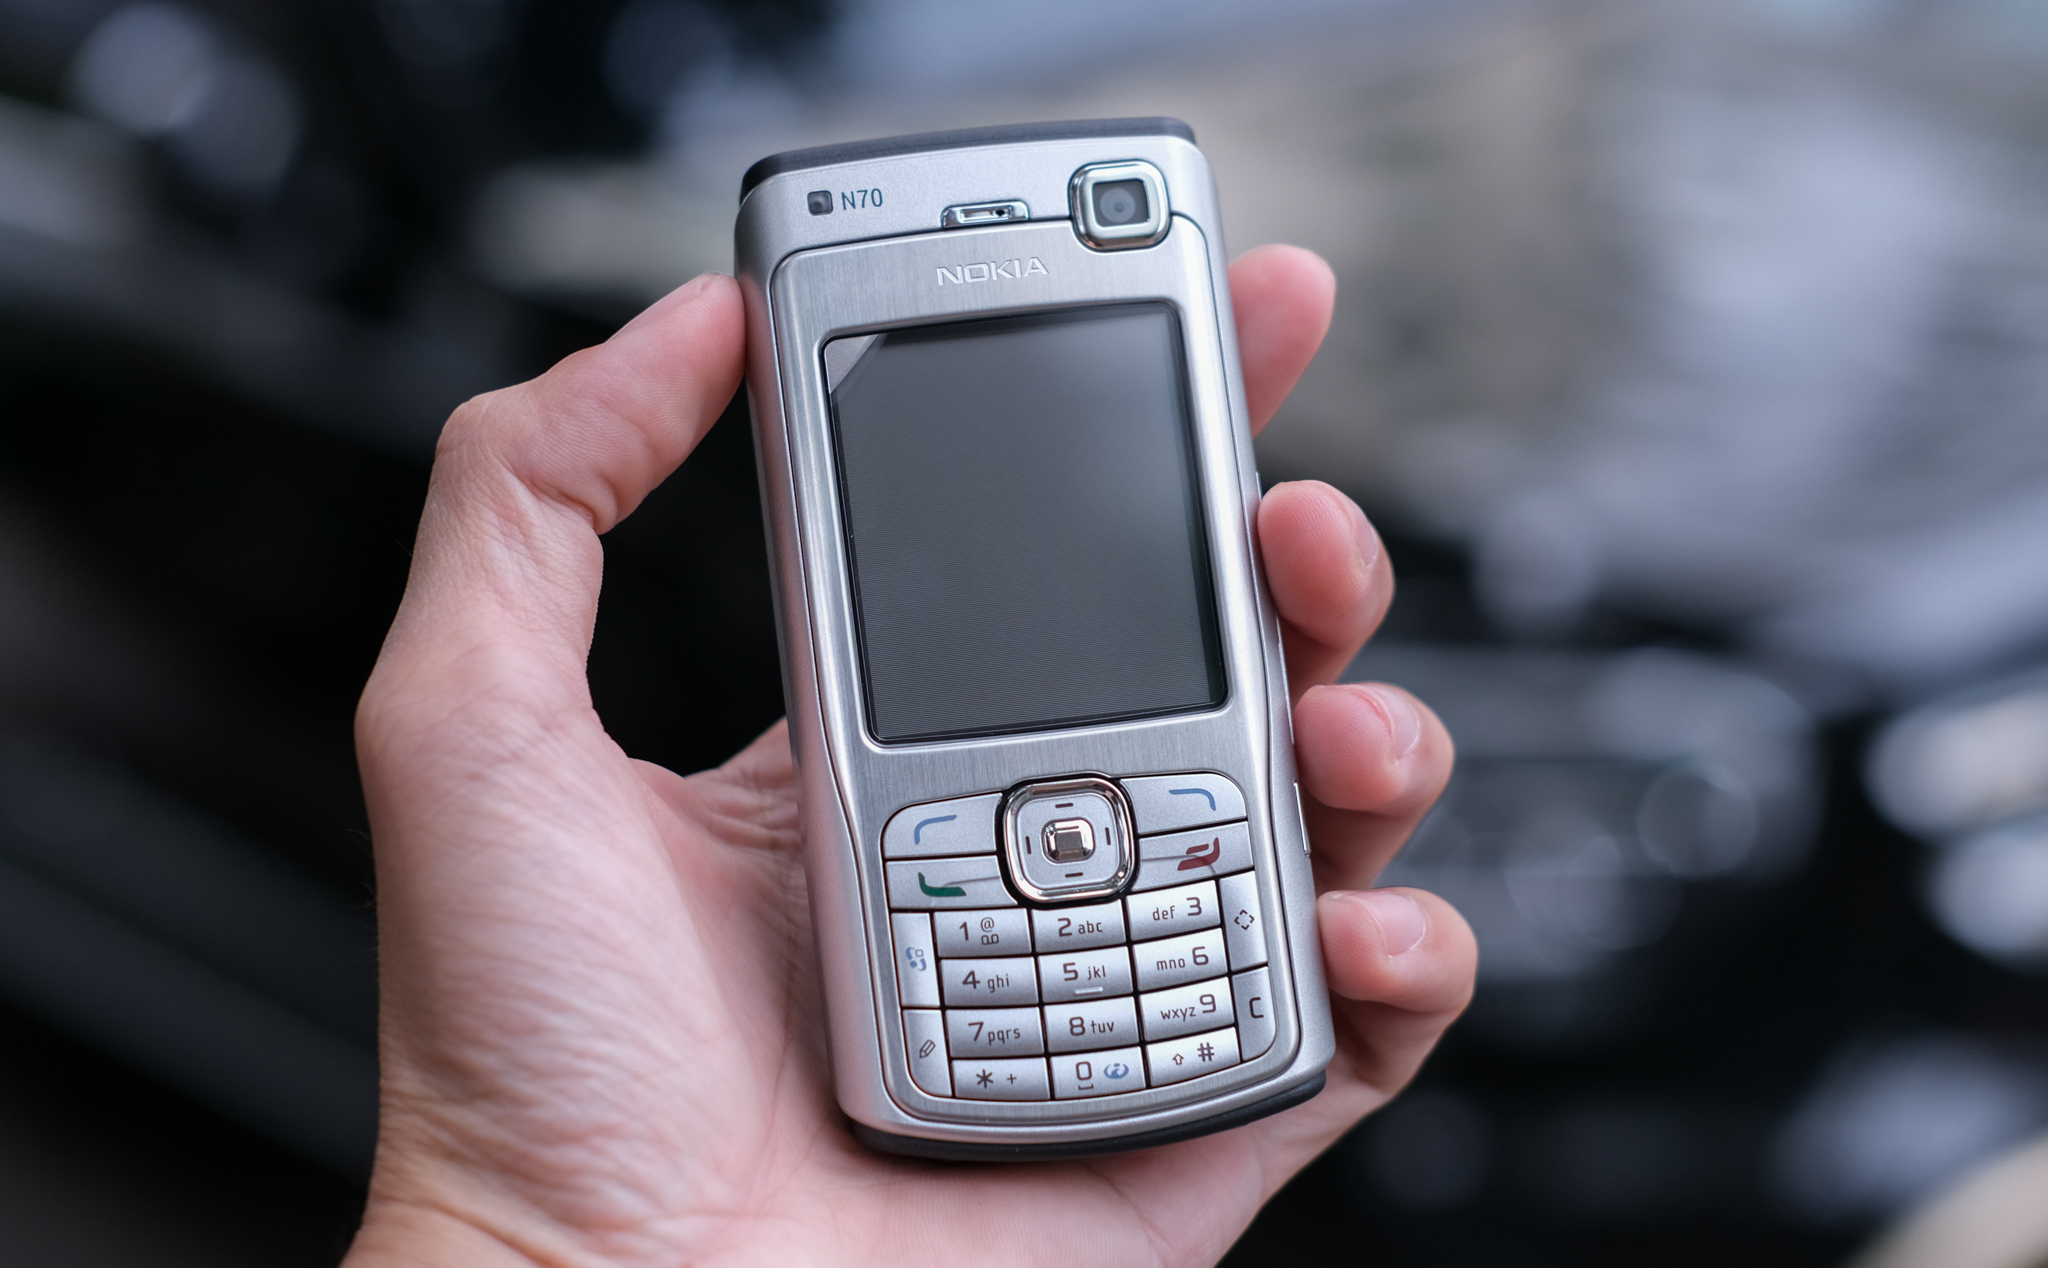 Trên tay máy cổ: Nokia N70 mới nguyên hộp